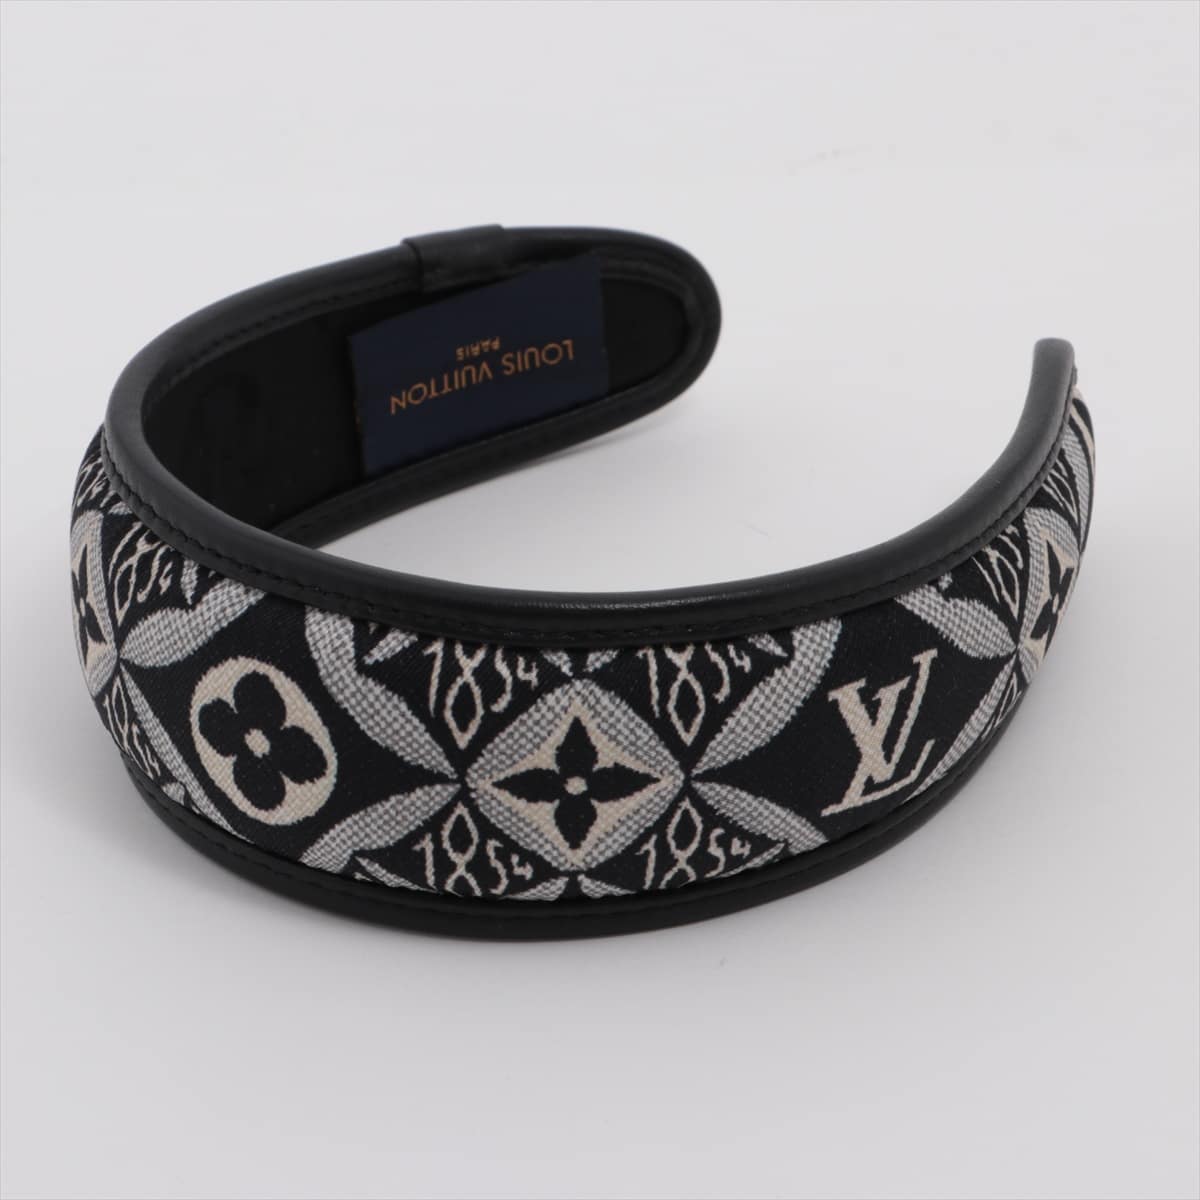 Louis Vuitton M77003 headbands SINCE 1854 CX0261 Headband Silk Black